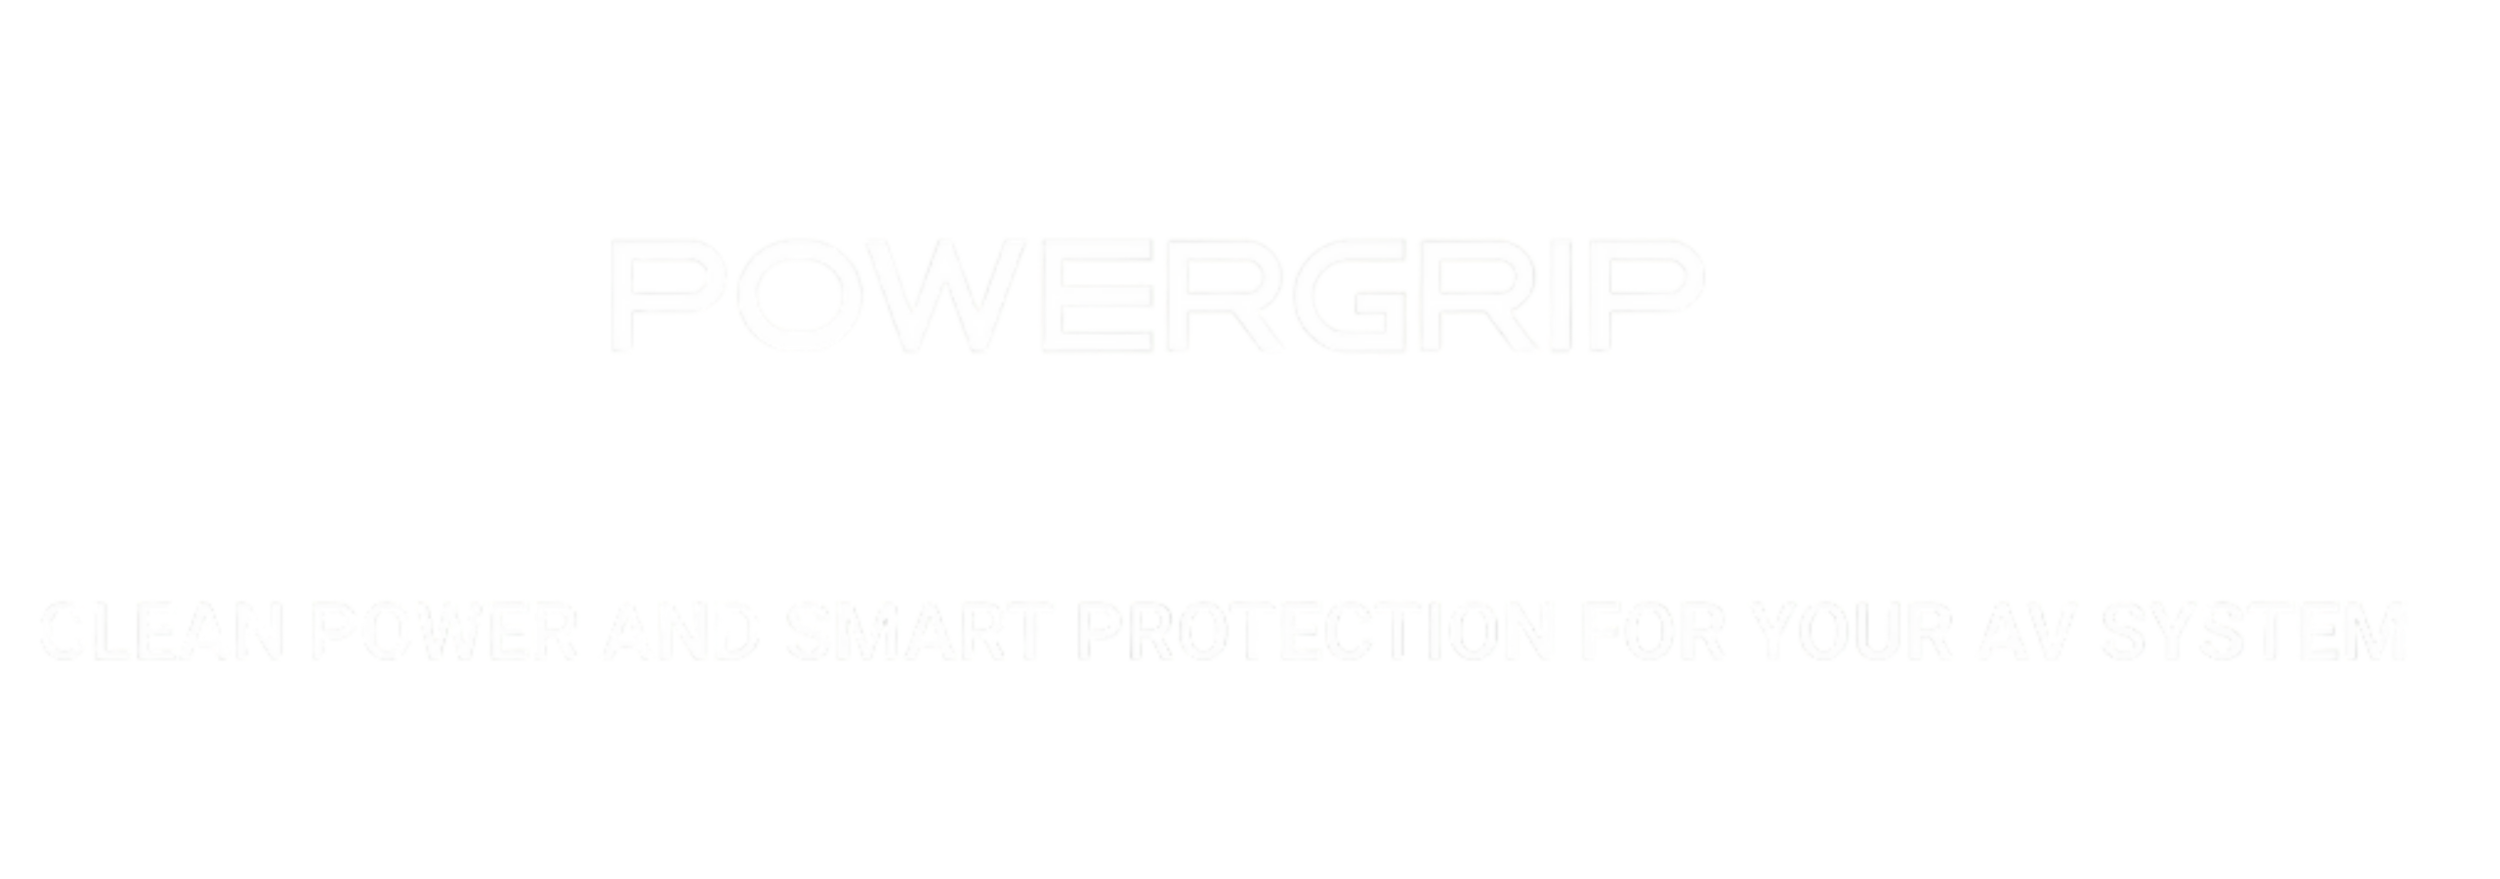 powergrip-YG-1-YG2-clean-power-logo.png